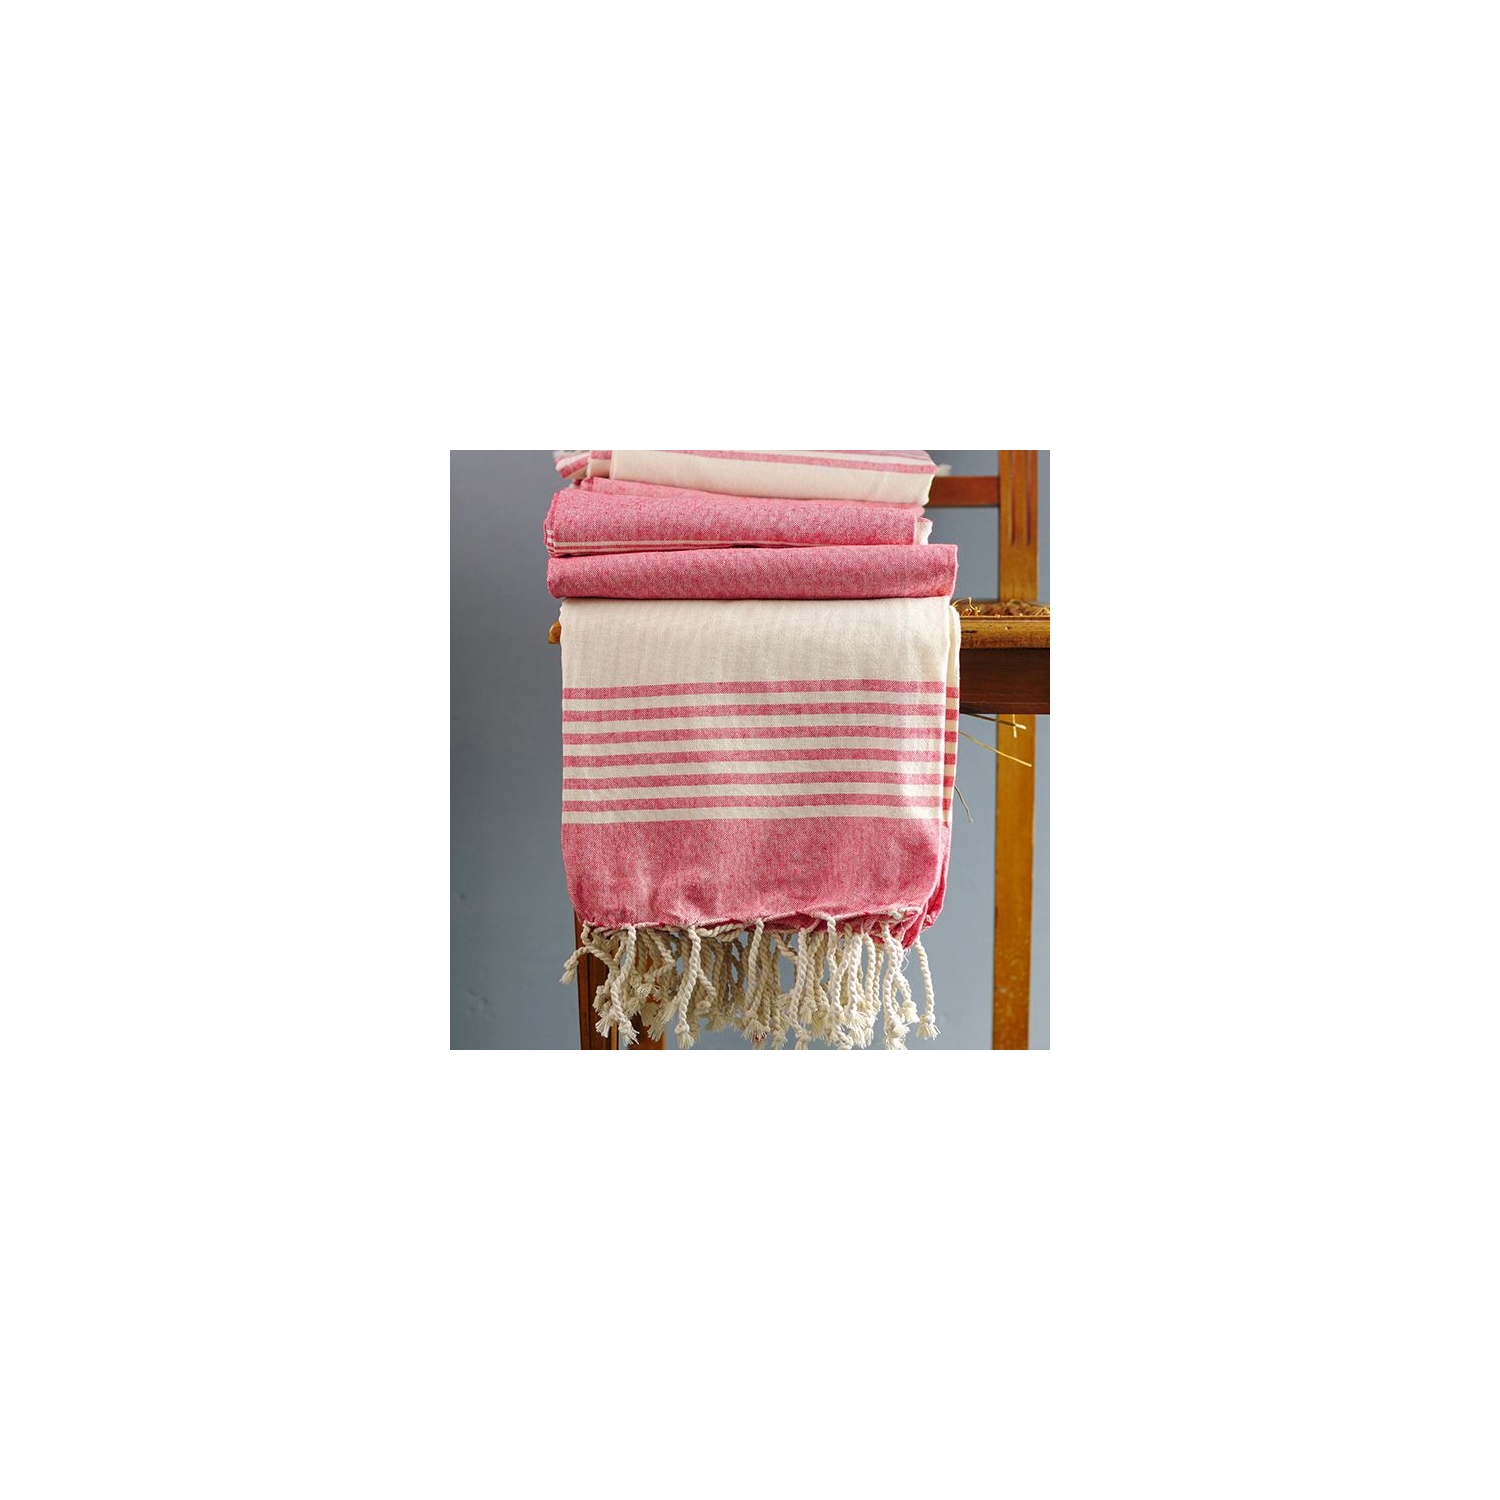 Couverture de canapé coton pur indien écru et rose